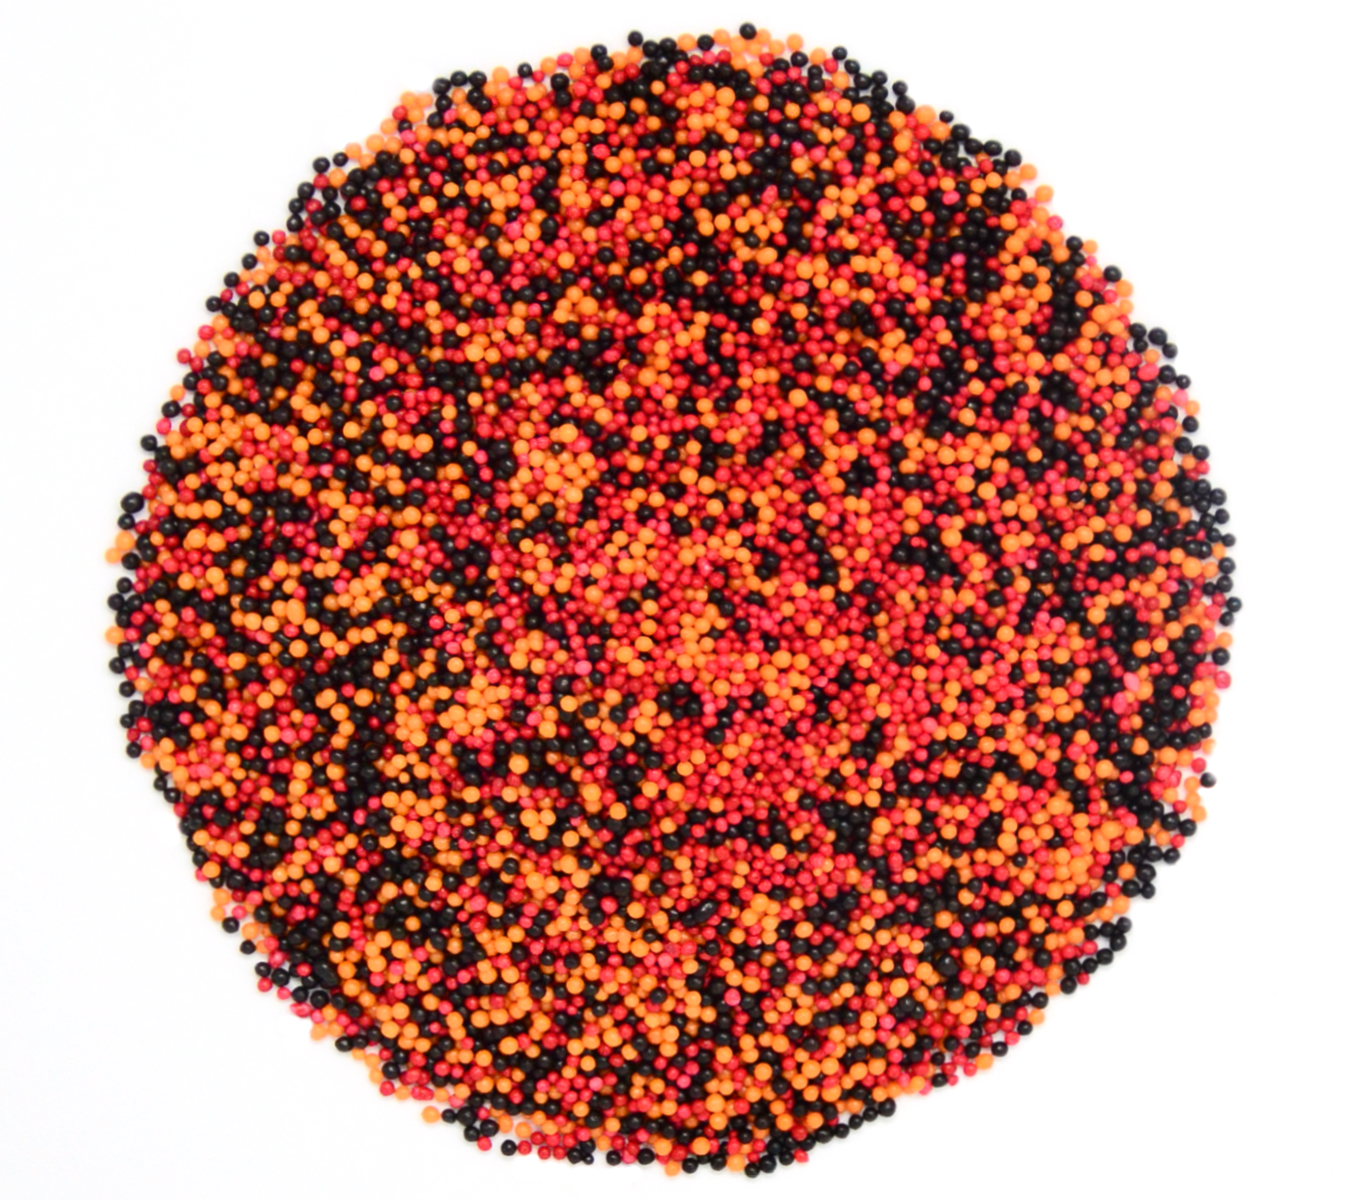 The Big Game: Black, Orange & Red Nonpareil Mix 3.8oz Bottle